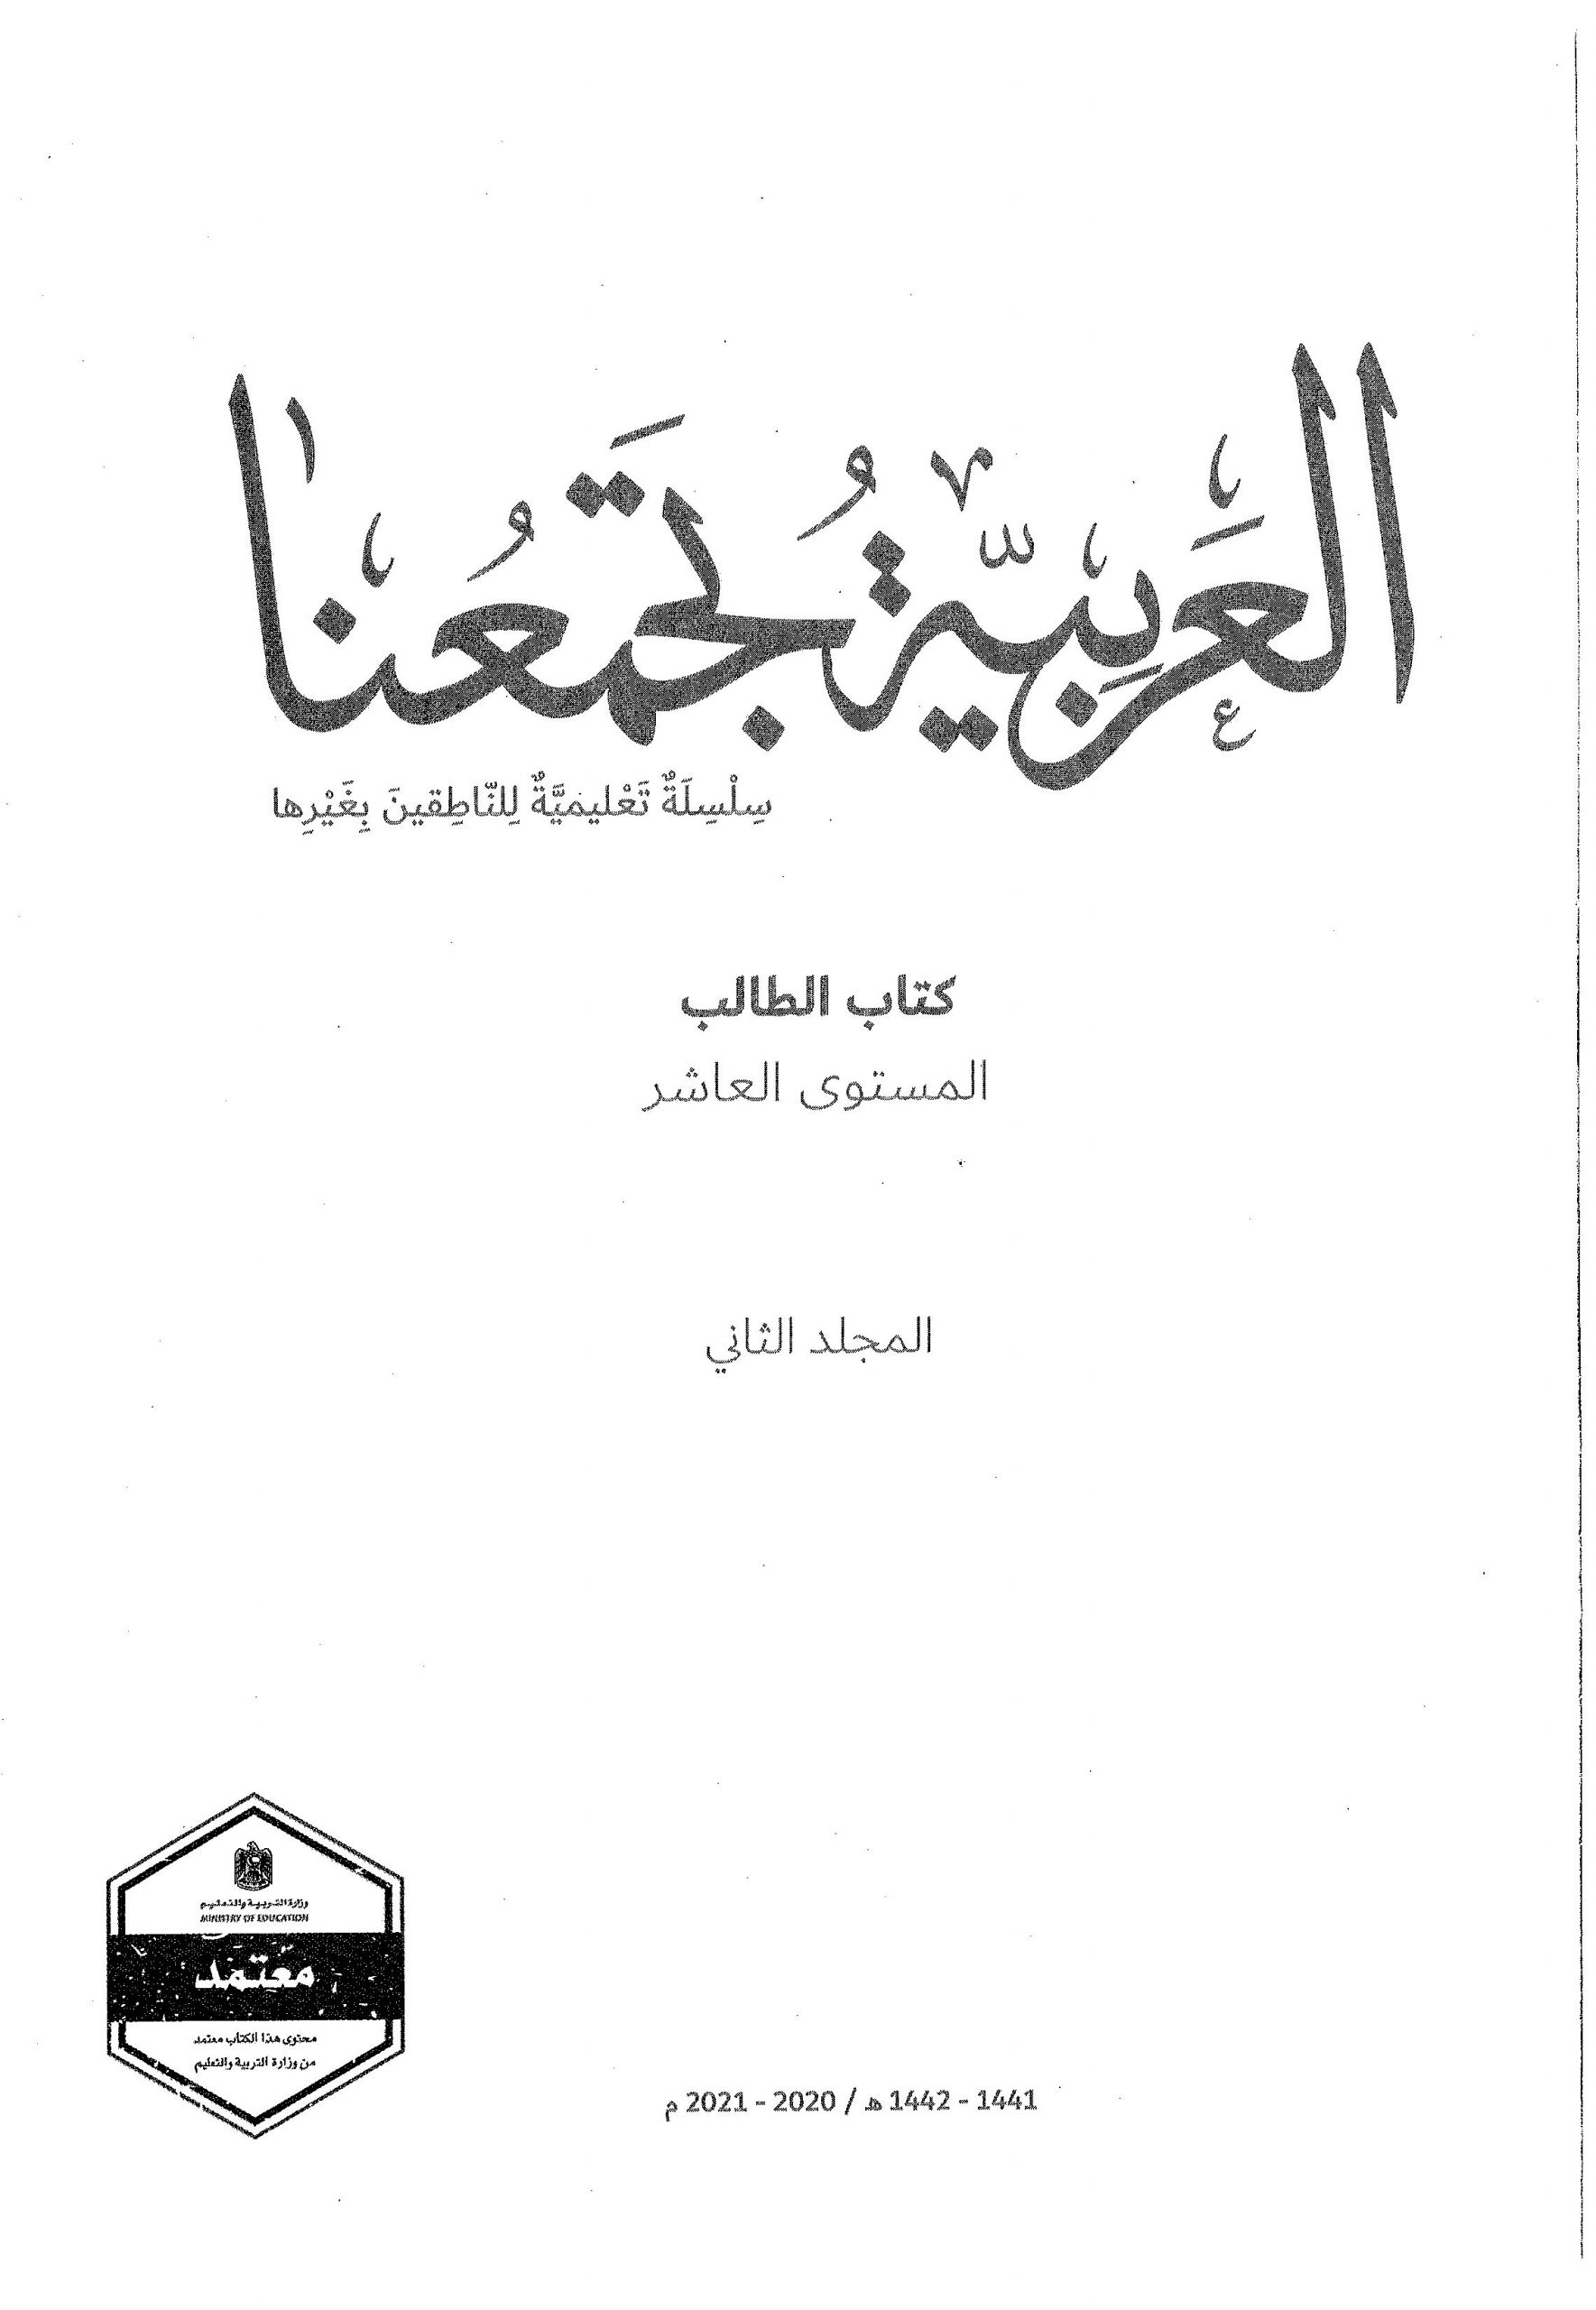 كتاب الطالب الفصل الدراسي الثاني 2020-2021 لغير الناطقين بها الصف العاشر مادة اللغة العربية 